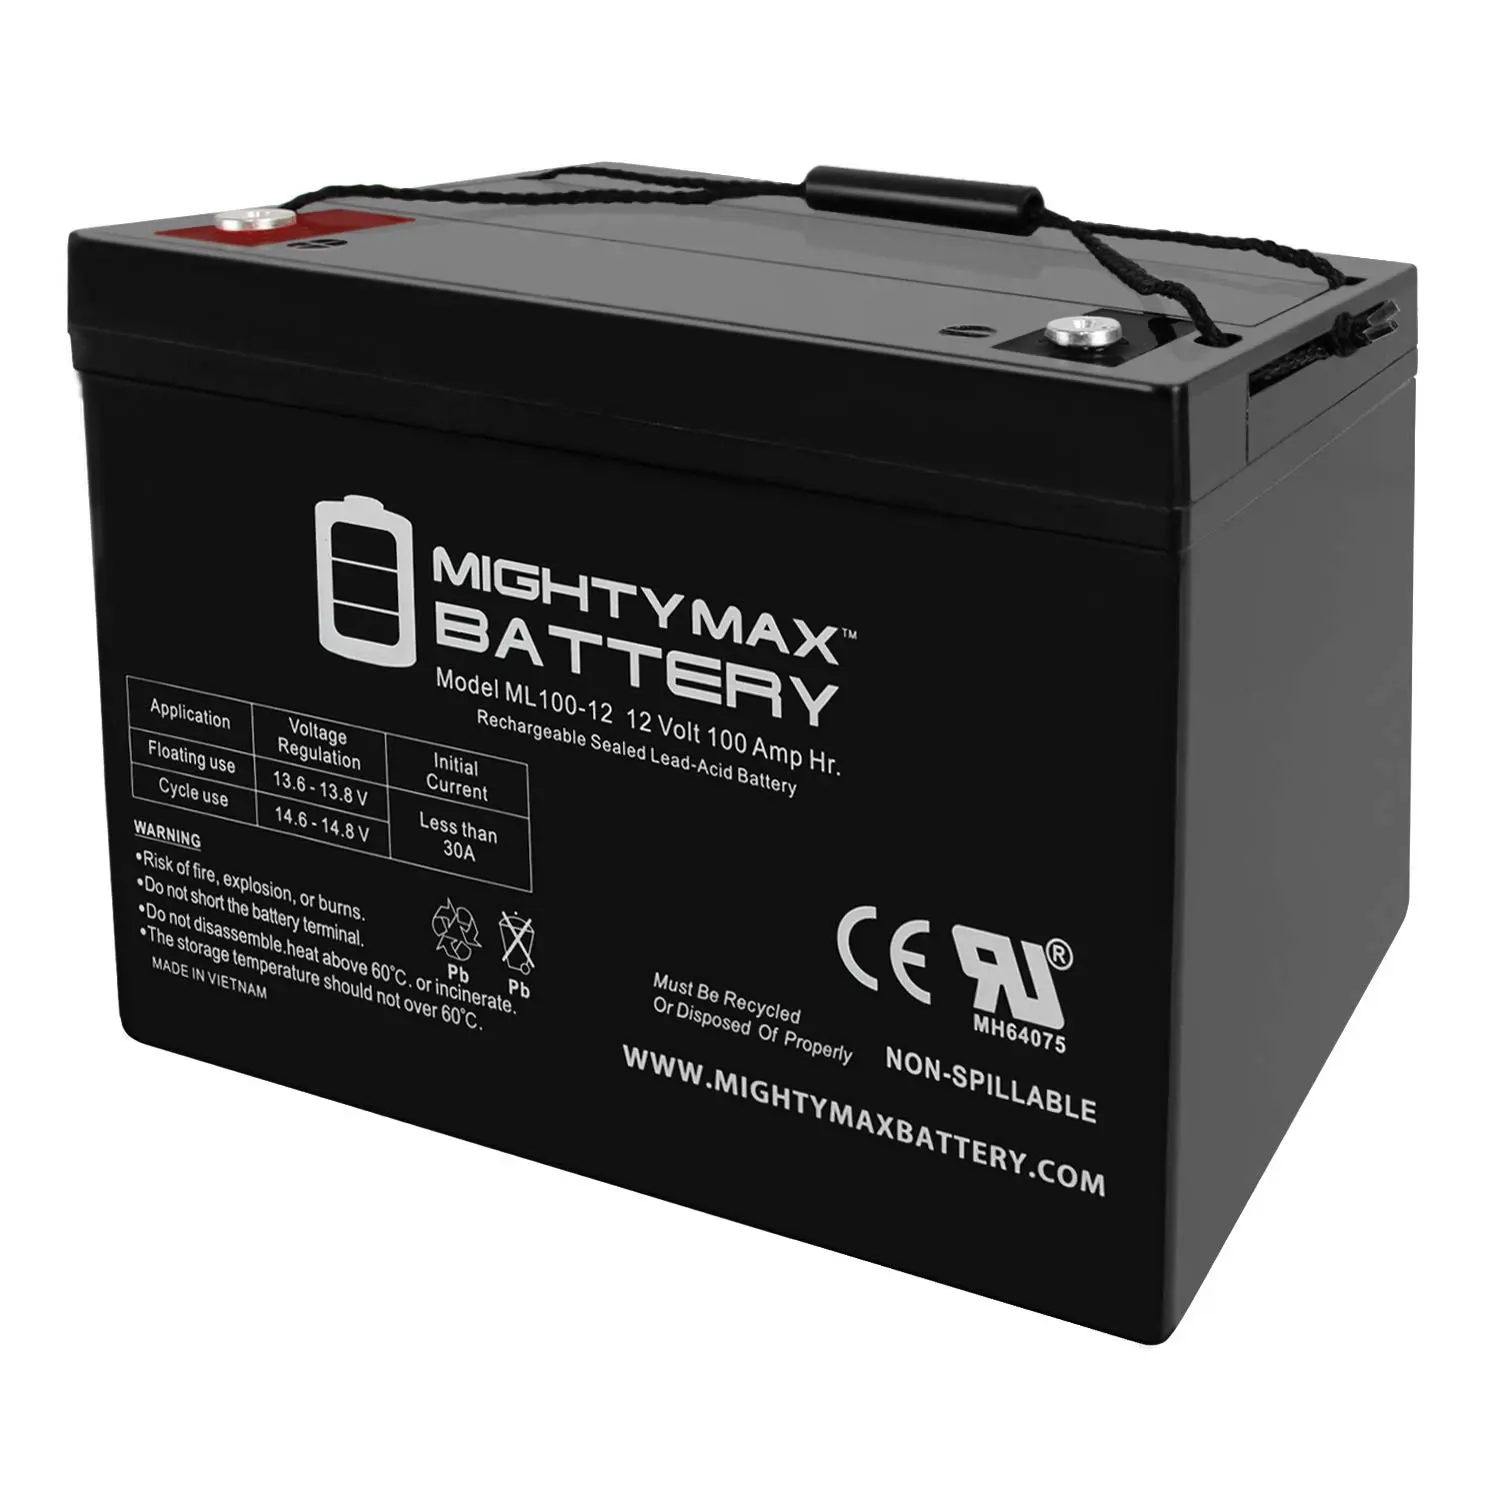 bateria de gel para placa solar - Qué es mejor una batería de litio o una batería de gel